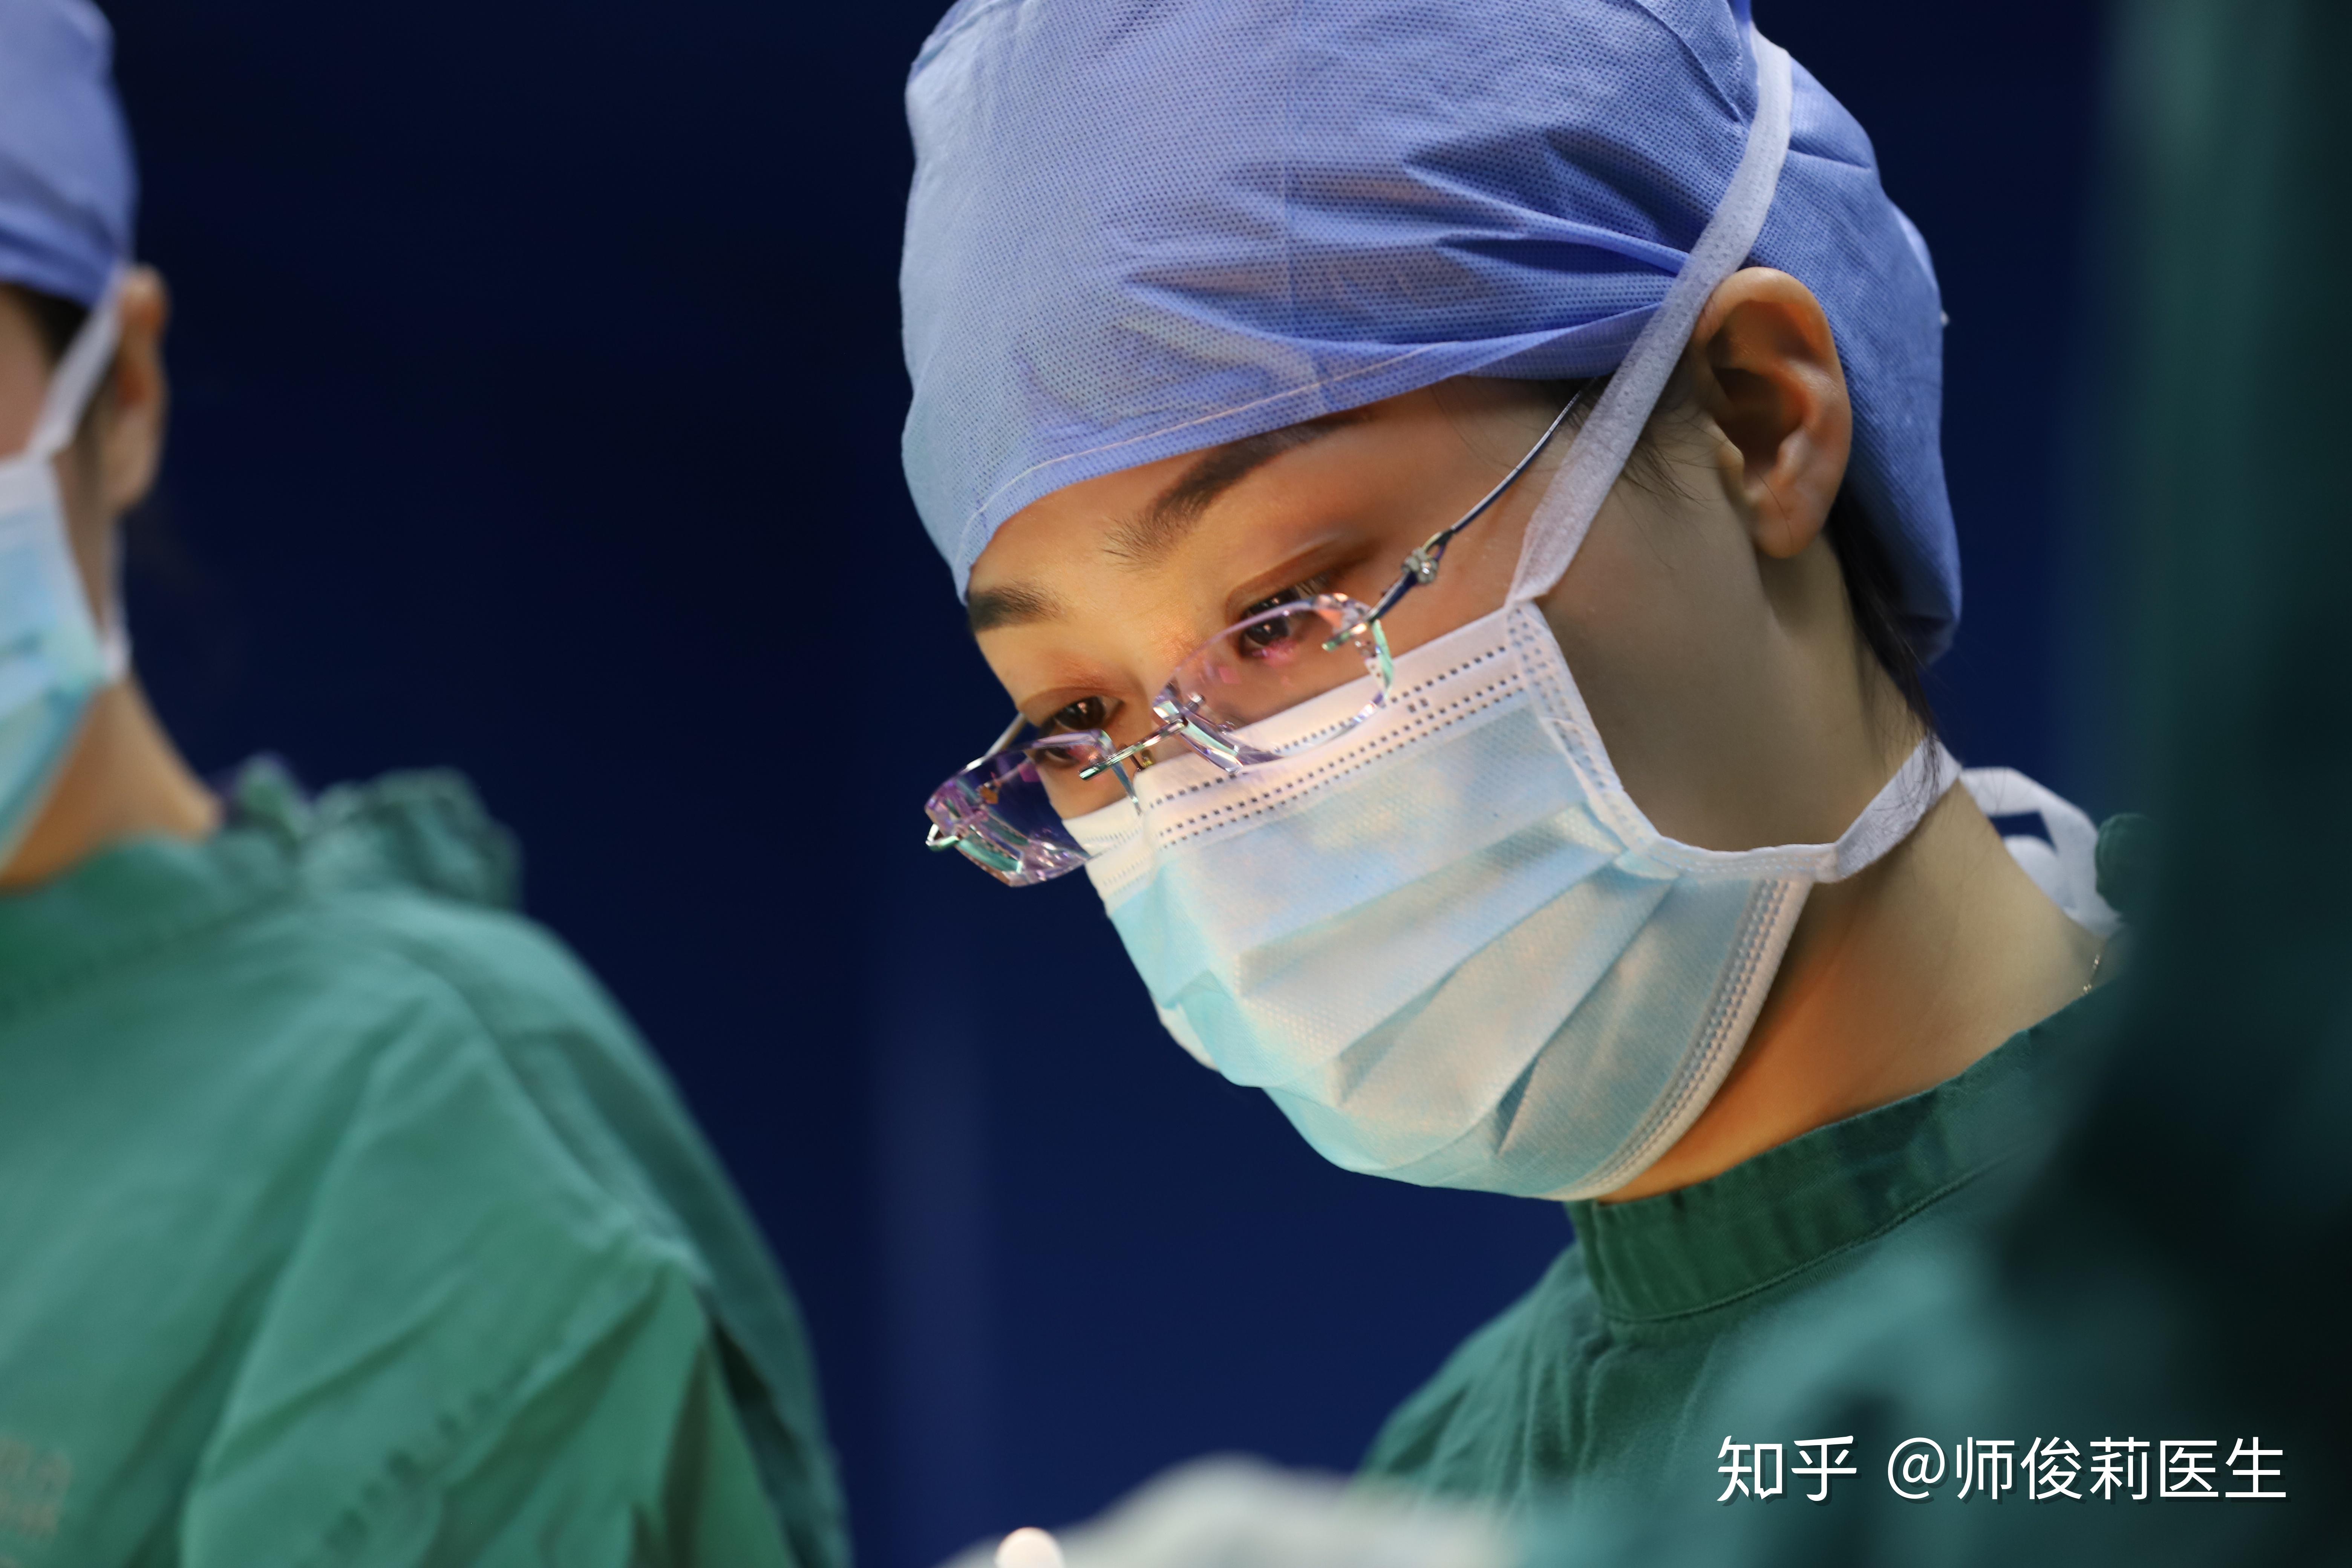 耳软骨复合隆鼻怎么样_恢复过程_效果如何_韩国清新整形外科医院整形日记5.7_新氧美容整形